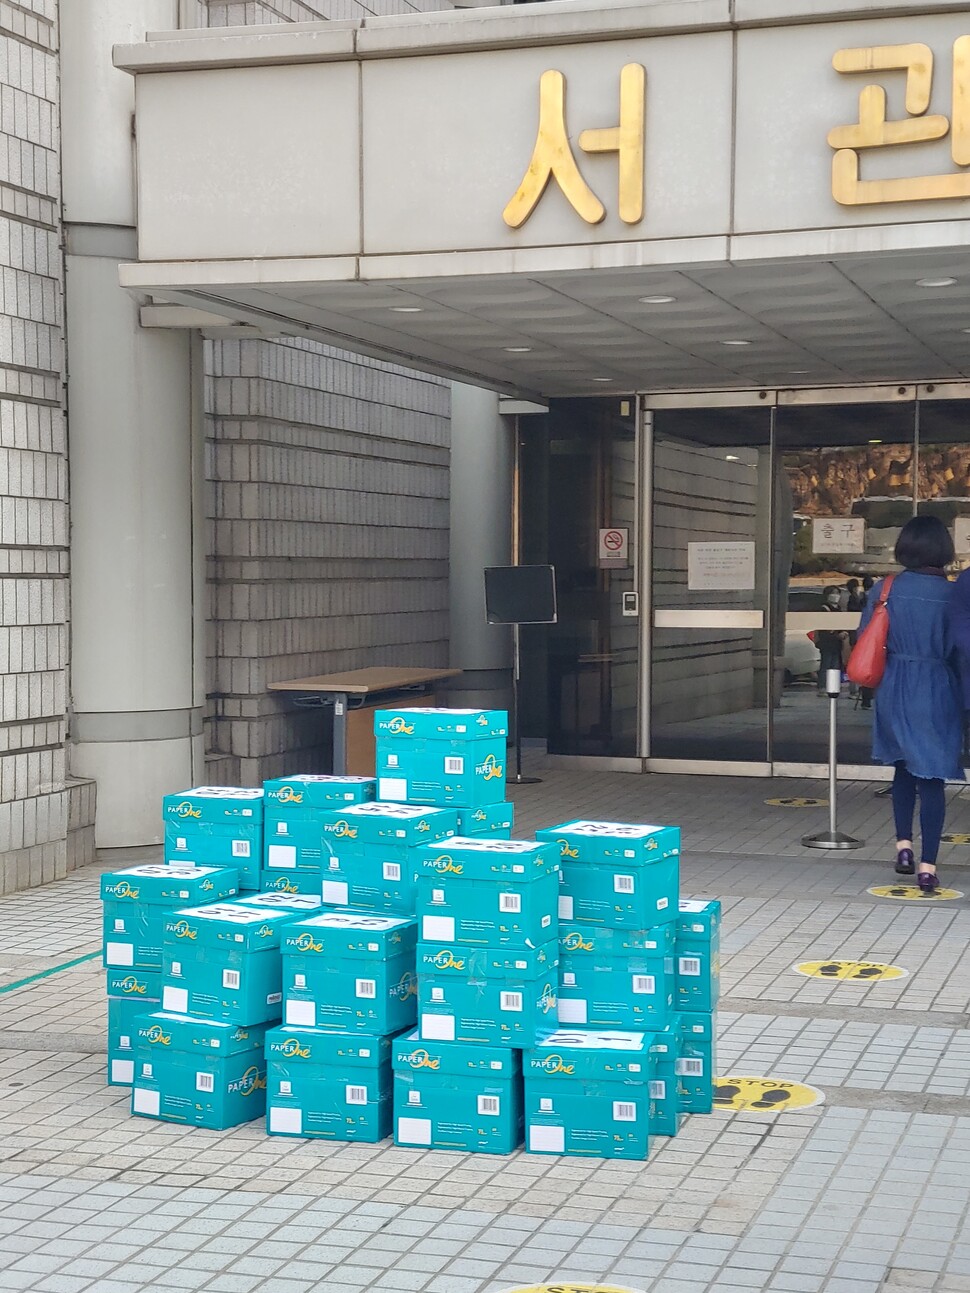 조주빈 등 텔레그램 성착취 가해자를 엄벌해달라는 내용의 탄원서 8만장을 담은 상자들이 11월13일 서울중앙지법 앞에 놓여있다. 화난 사람들 제공